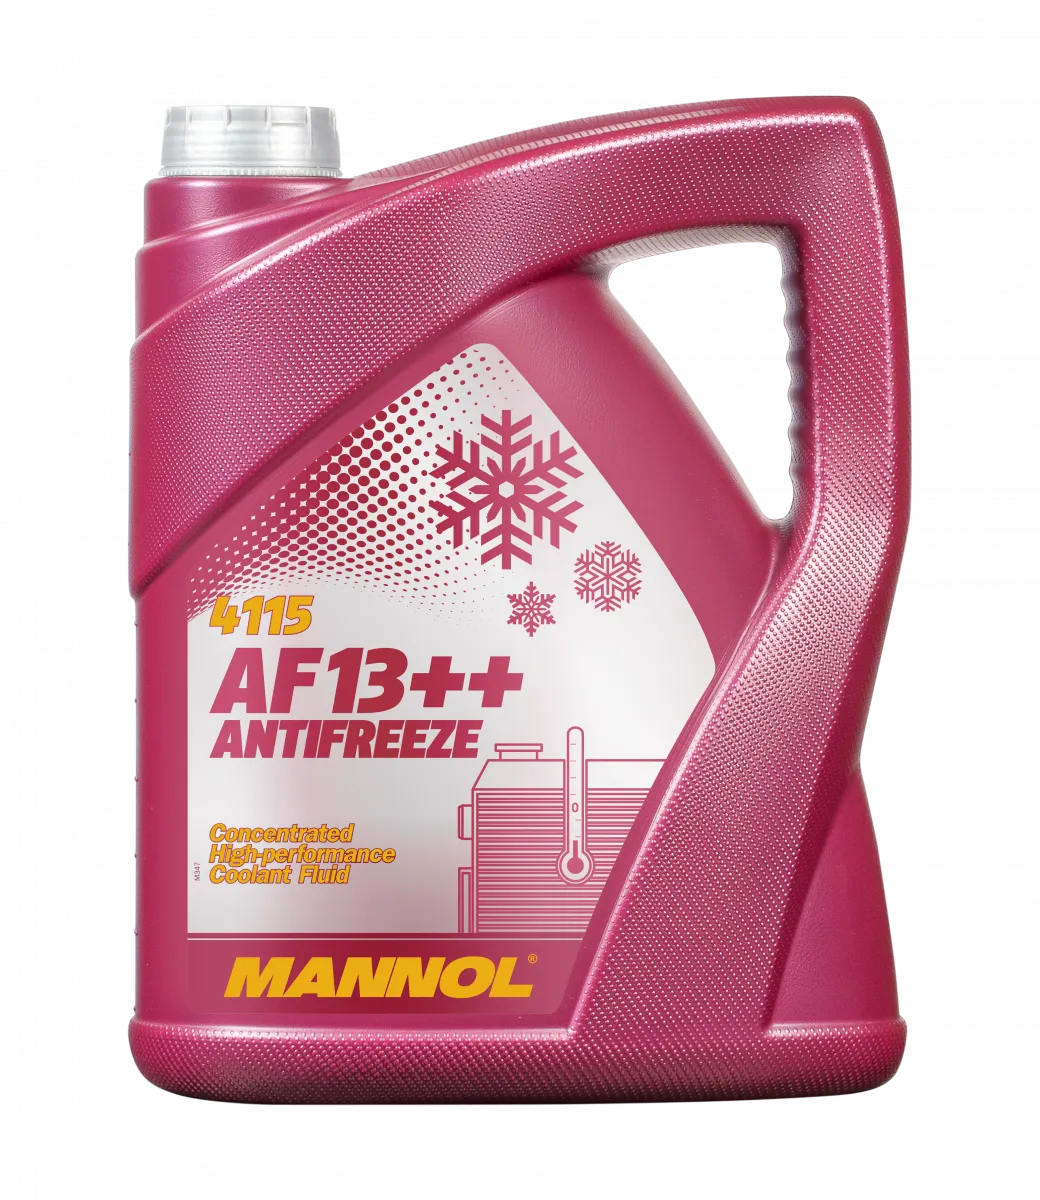 Моторное масло Mannol antifreeze af13++#1